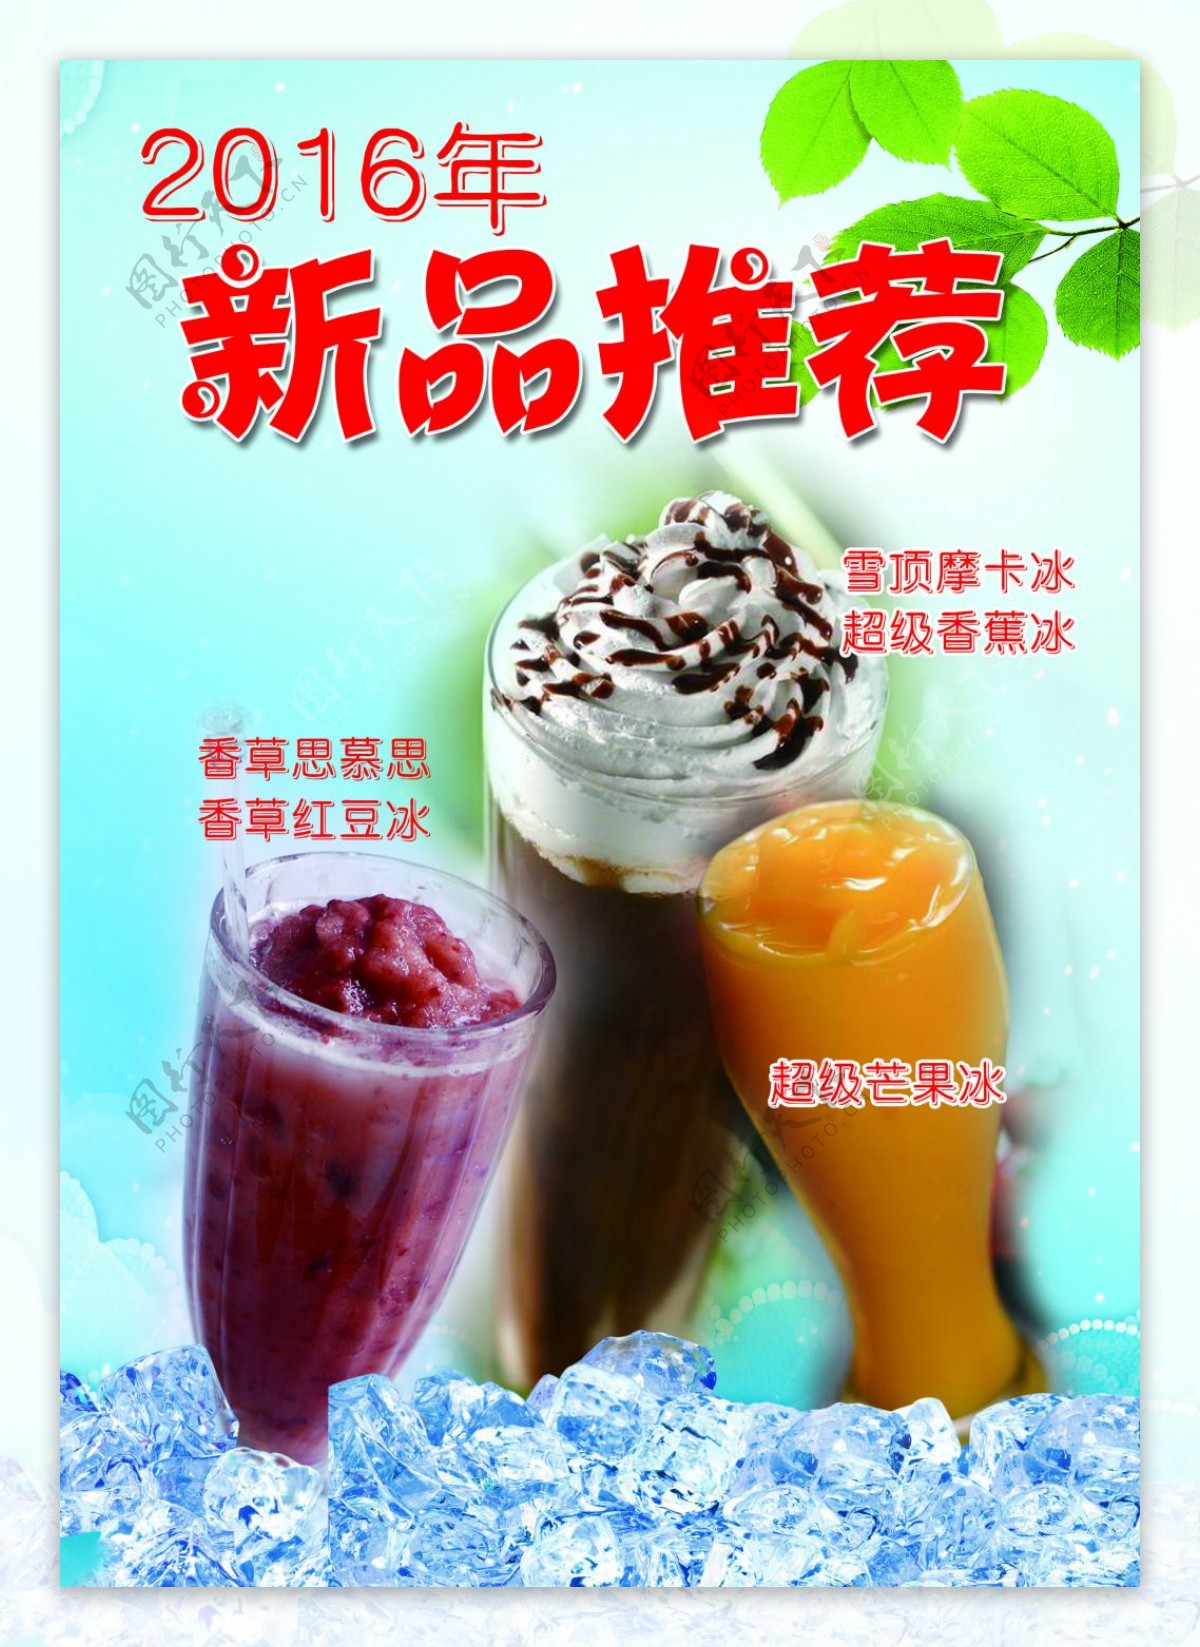 2016年新品推荐夏季饮品摩卡芒果冰